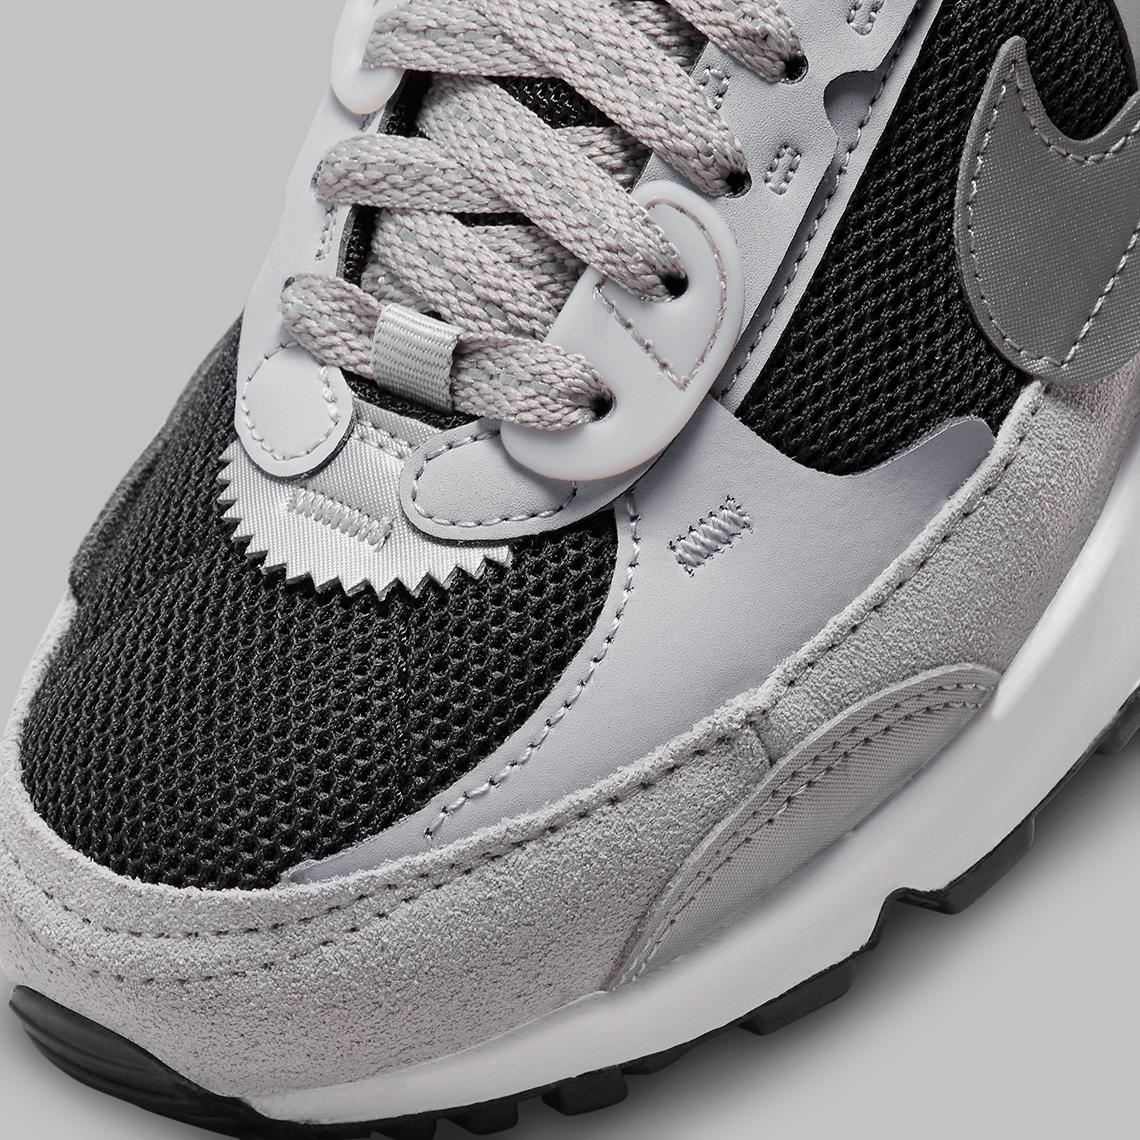 Nike Air Max 90 Futura “Black/Grey” FN7777-001 | SneakerNews.com